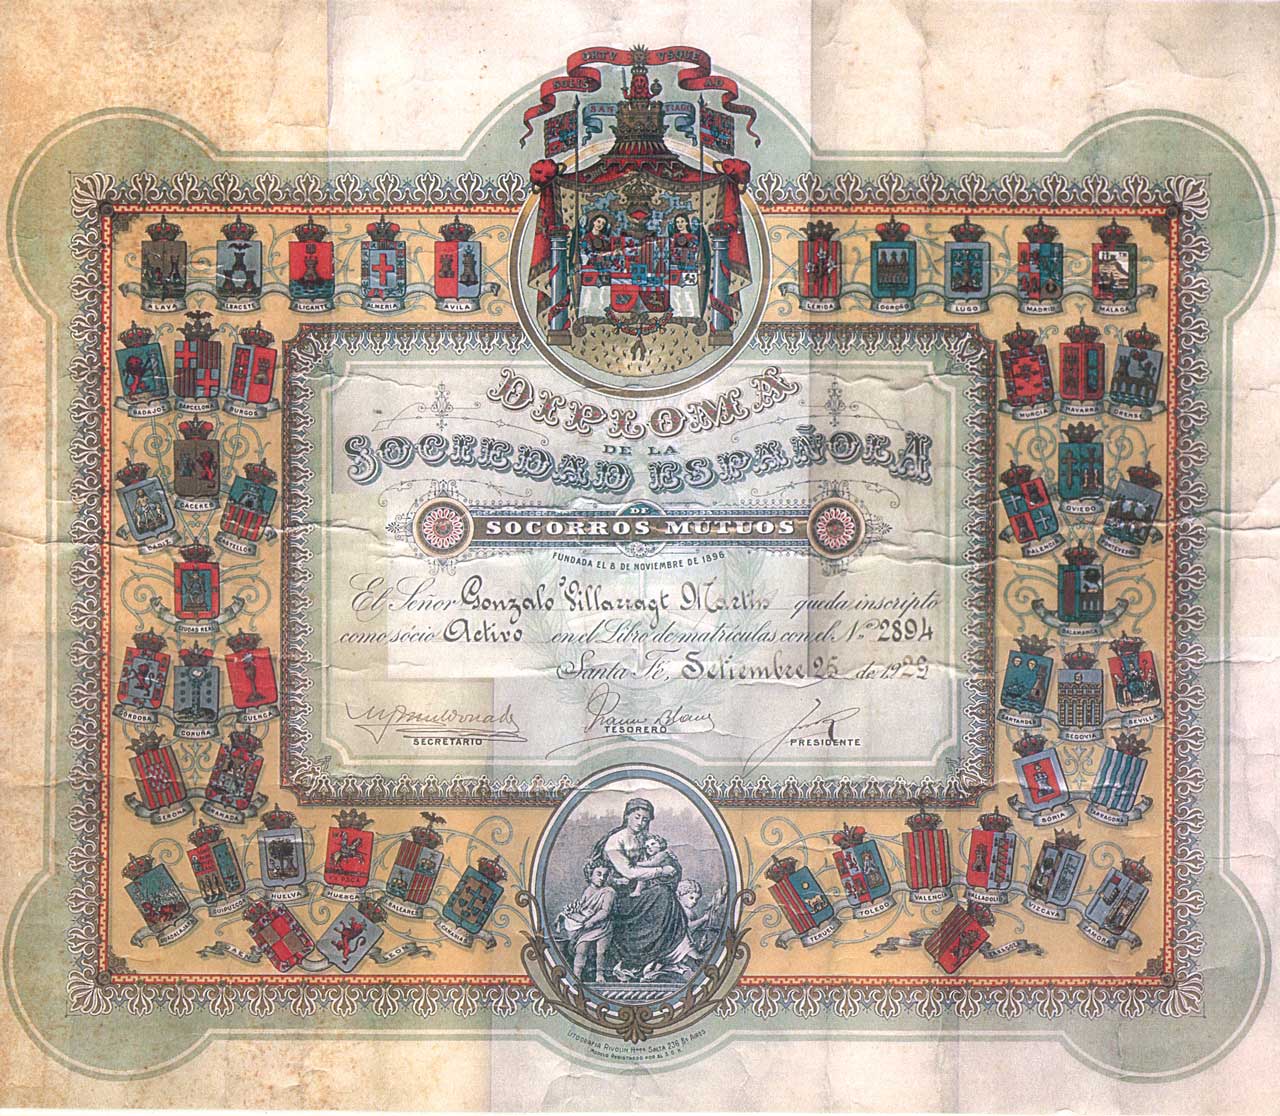 Diploma de la Sociedad Española de Socorros Mutuos de Santa Fe, entidad fundada en 1896, Santa Fe (Argentina), 1929